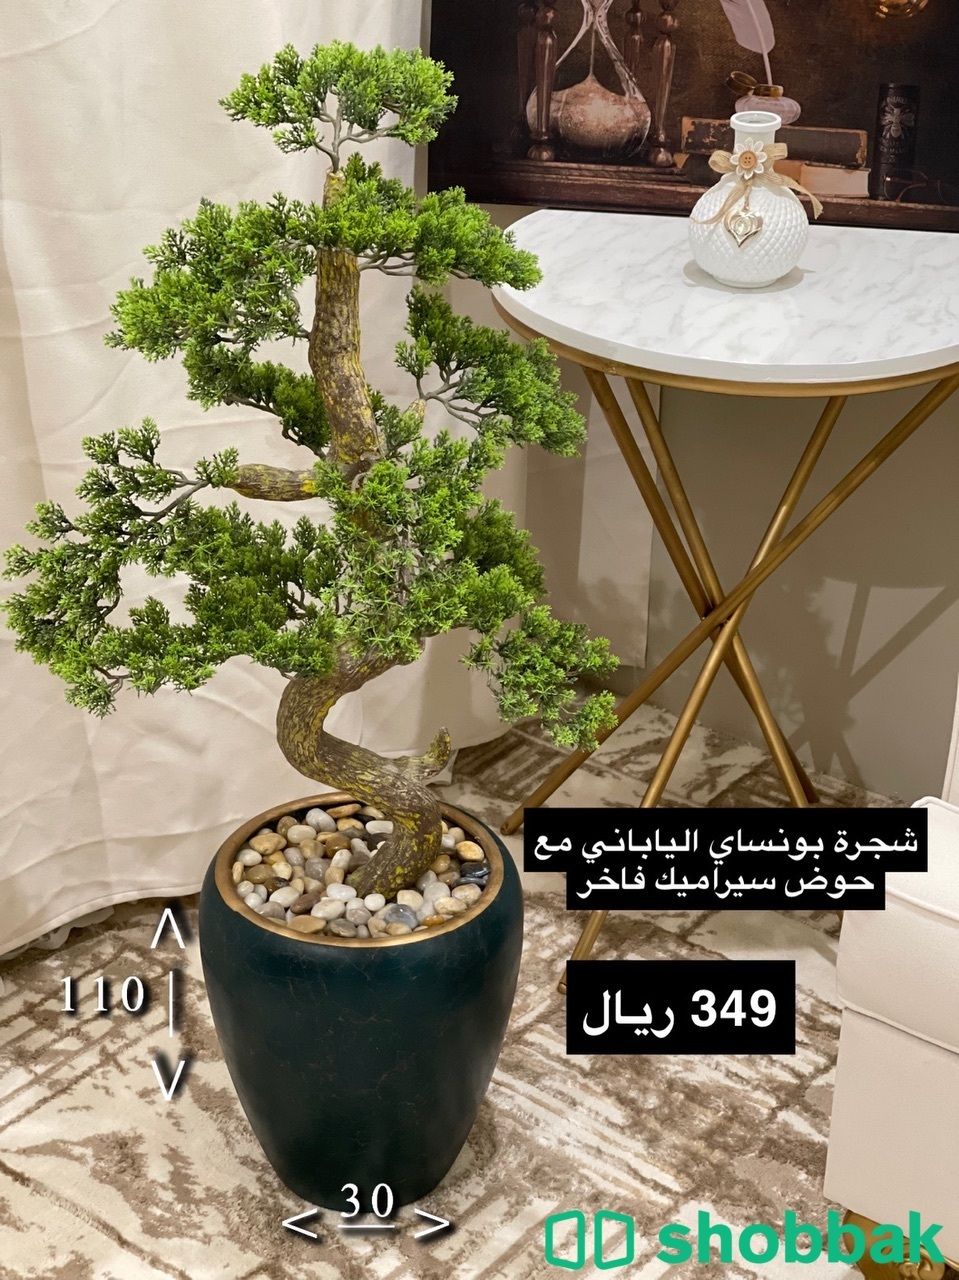 أشجار صناعية وأحواض سيراميك واستيل Shobbak Saudi Arabia